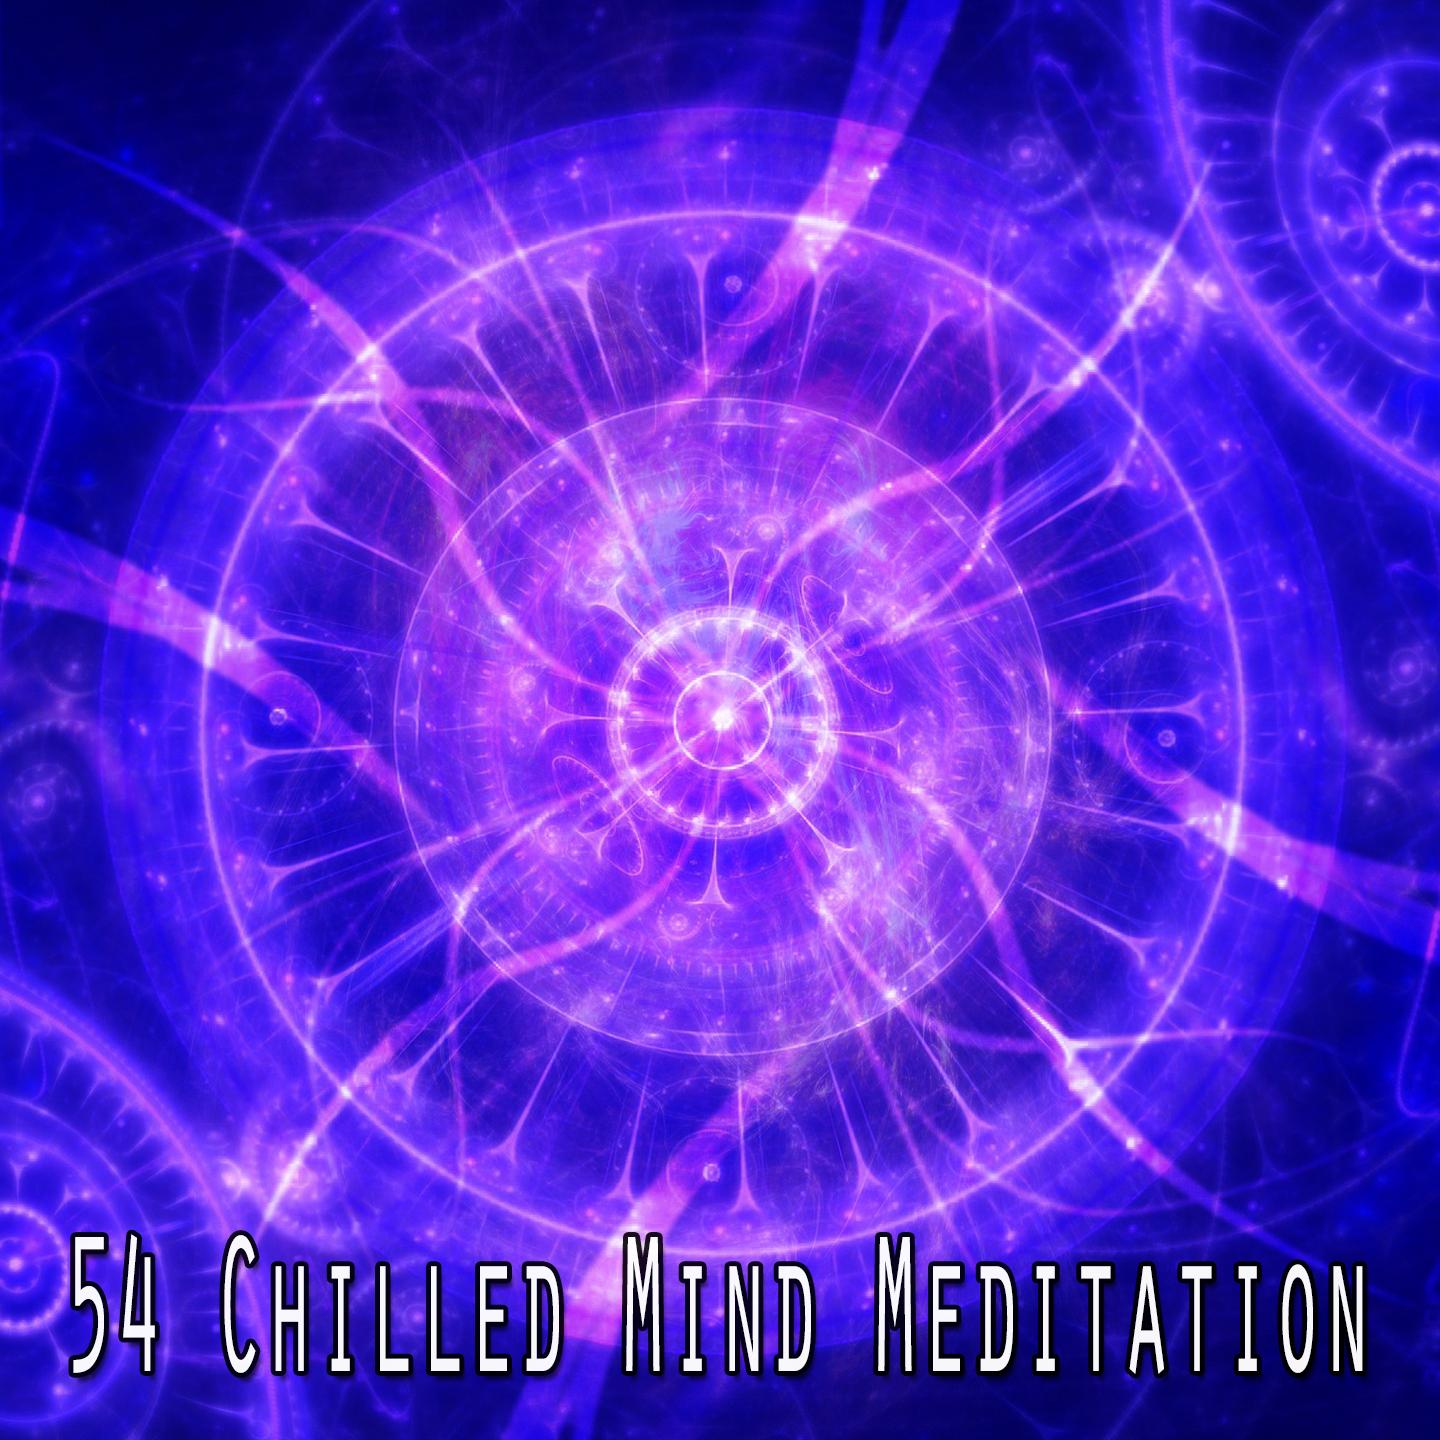 54 Chilled Mind Meditation